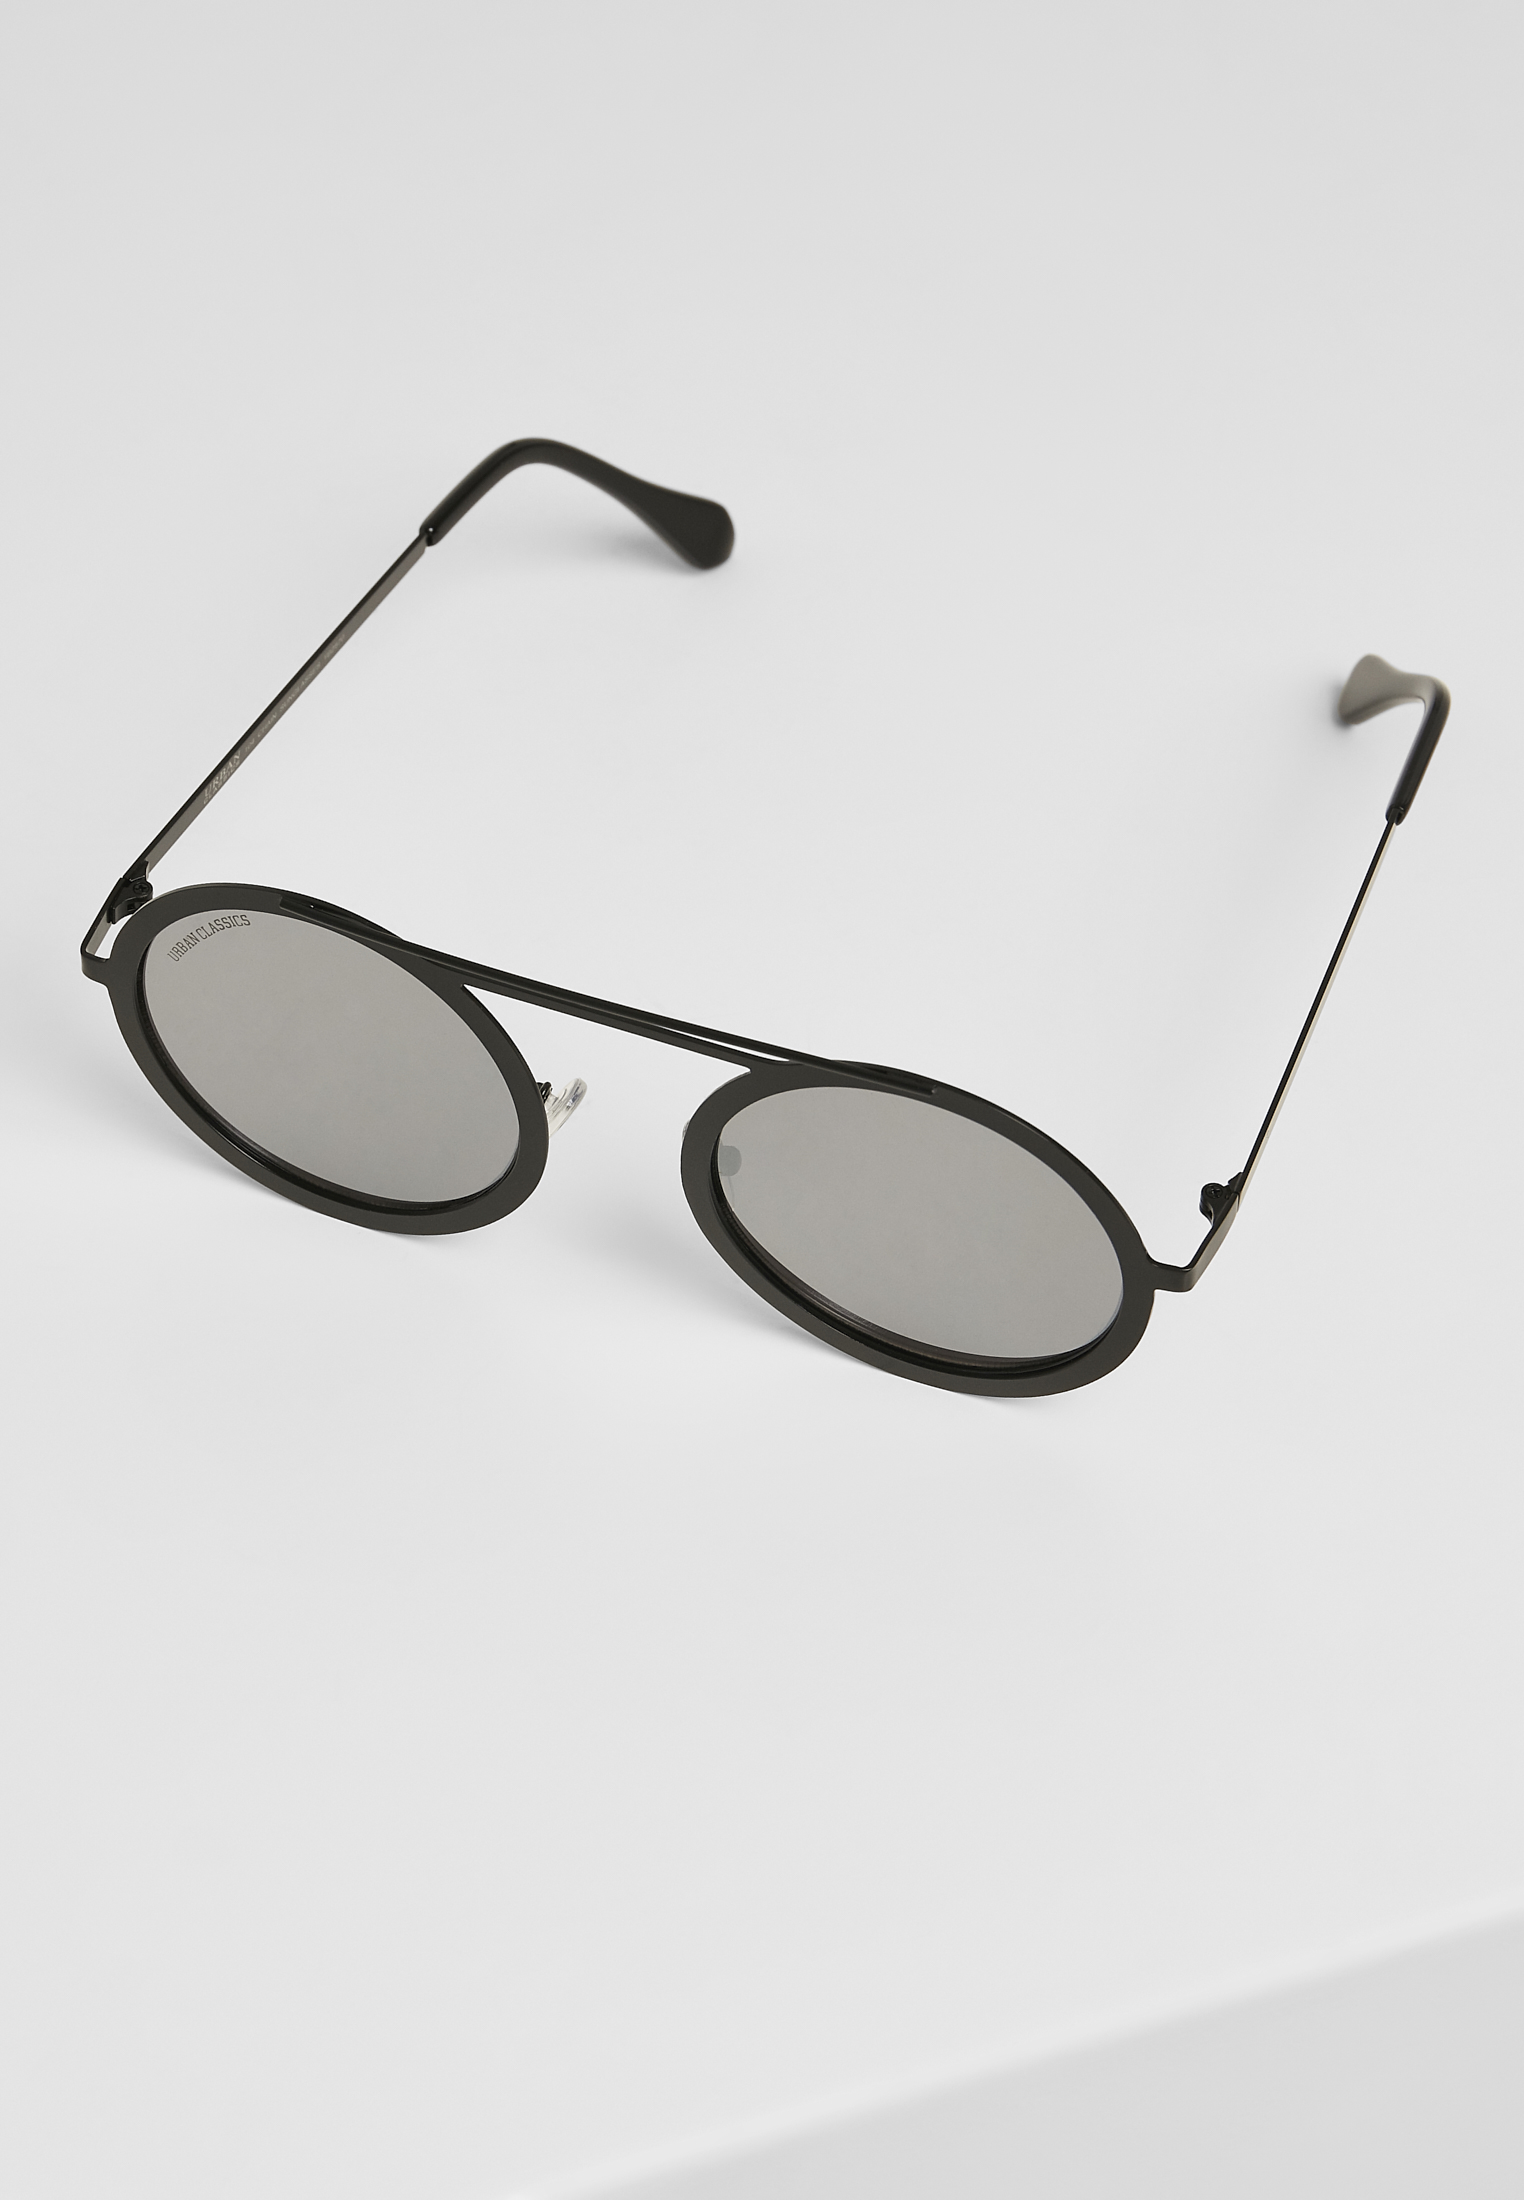 Sonnenbrillen 104 Chain Sunglasses in Farbe silver mirror/black